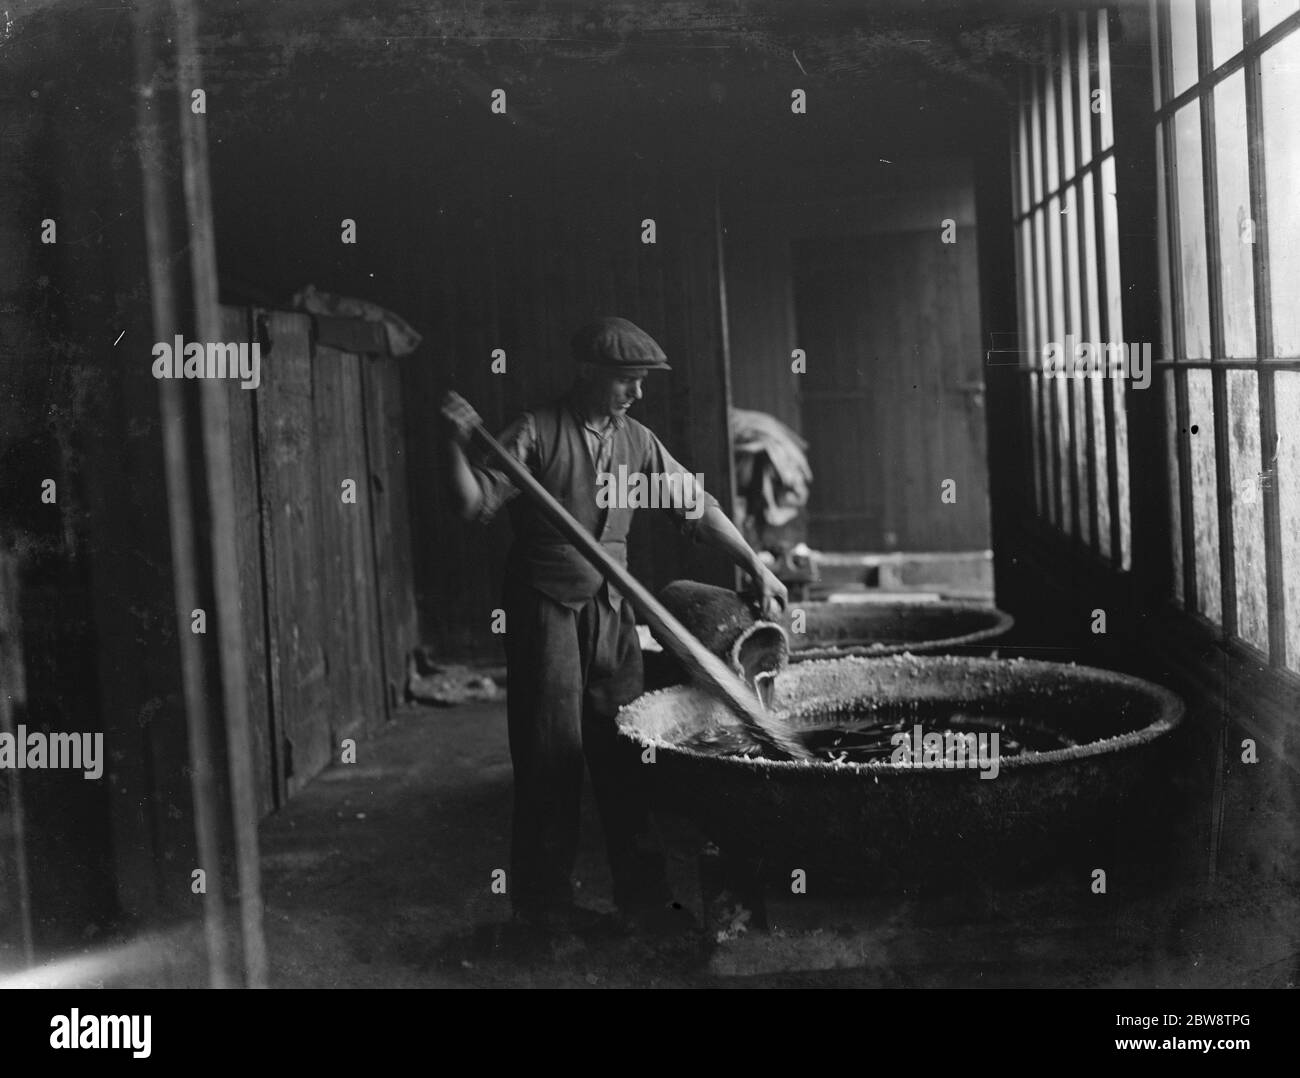 Un exemple de méthodes de fabrication primitive dans les années 1930 , un homme verse de l'acide sulfurique sur des barres de cadmium à l' usine chimique Tyke and Kings . 1936 Banque D'Images